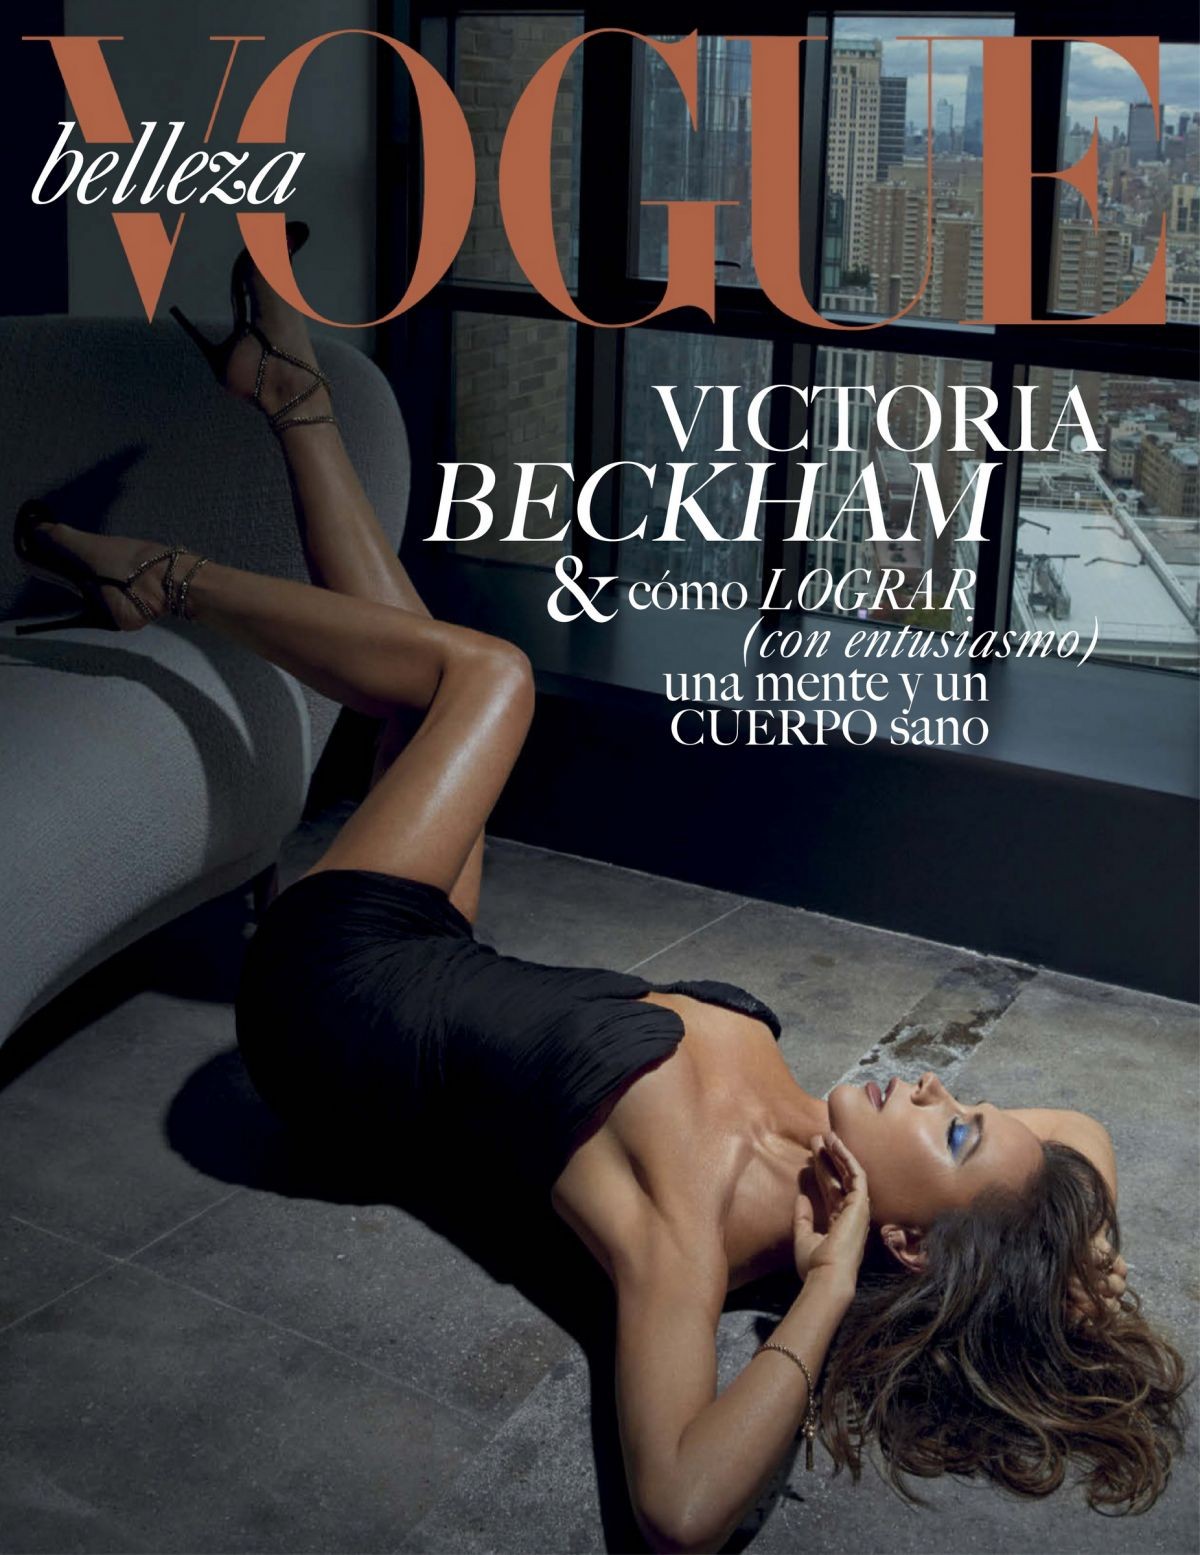 Victoria Beckham Sexy In Vogue Magazine TheFappening.pro 1 - Victoria Beckham The Fappening Sexy (10 Photos)